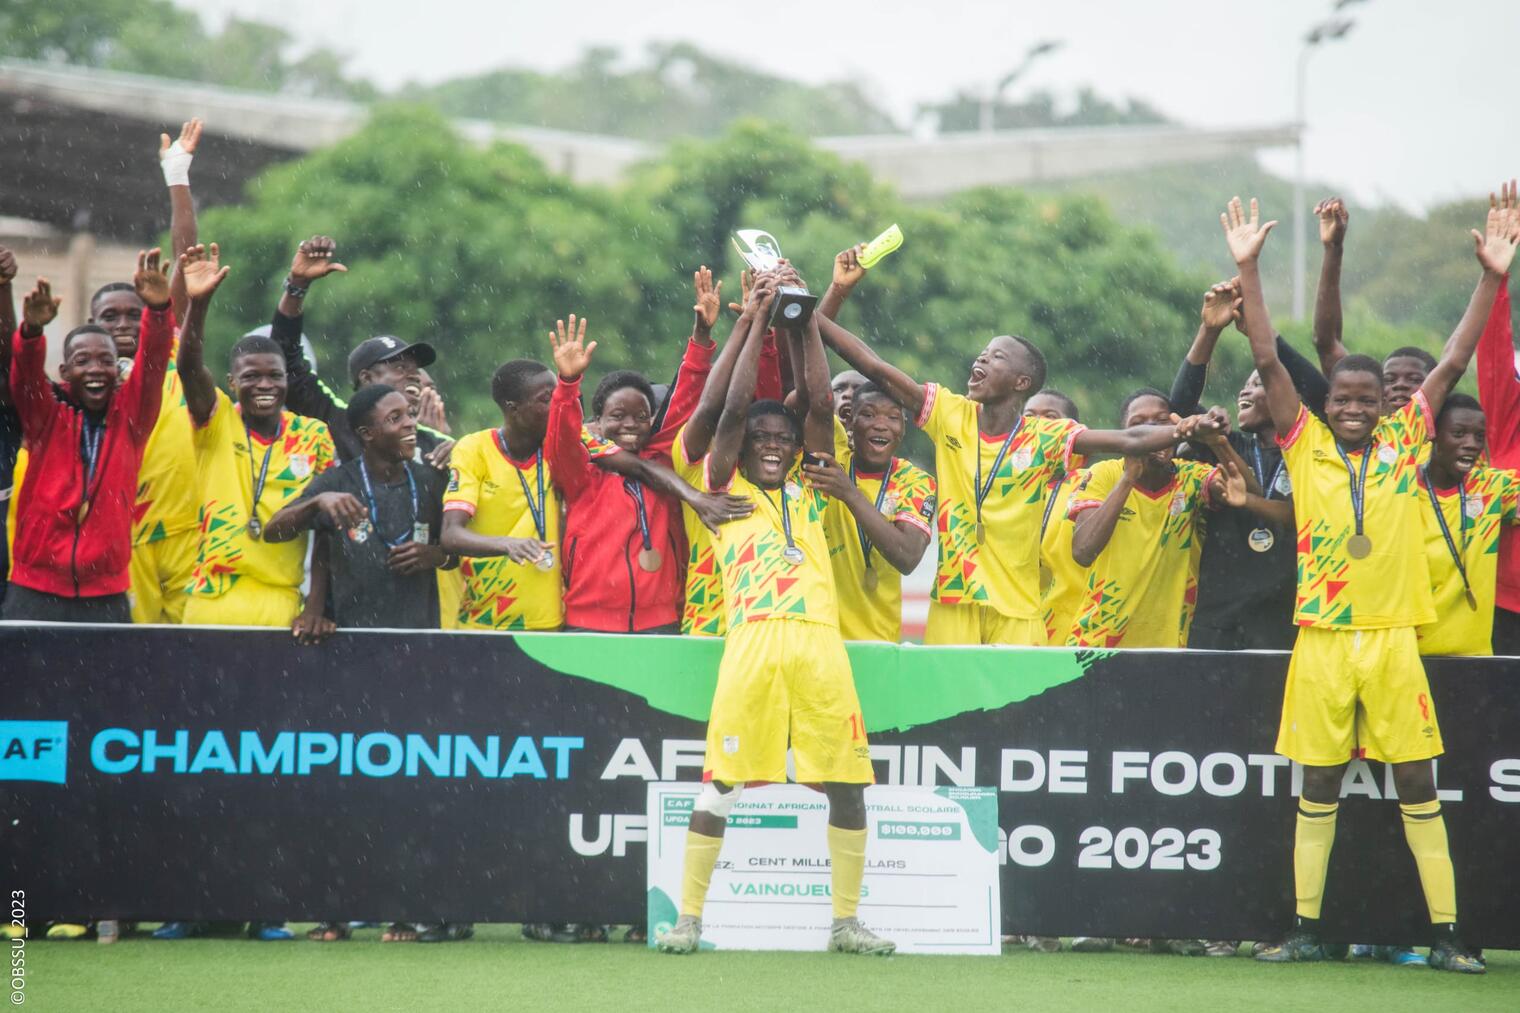 Championnat Africain de Football Scolaire : Le Bénin vainqueur du tournoi UFOA-B U15, valide son ticket pour la coupe d’Afrique scolaire